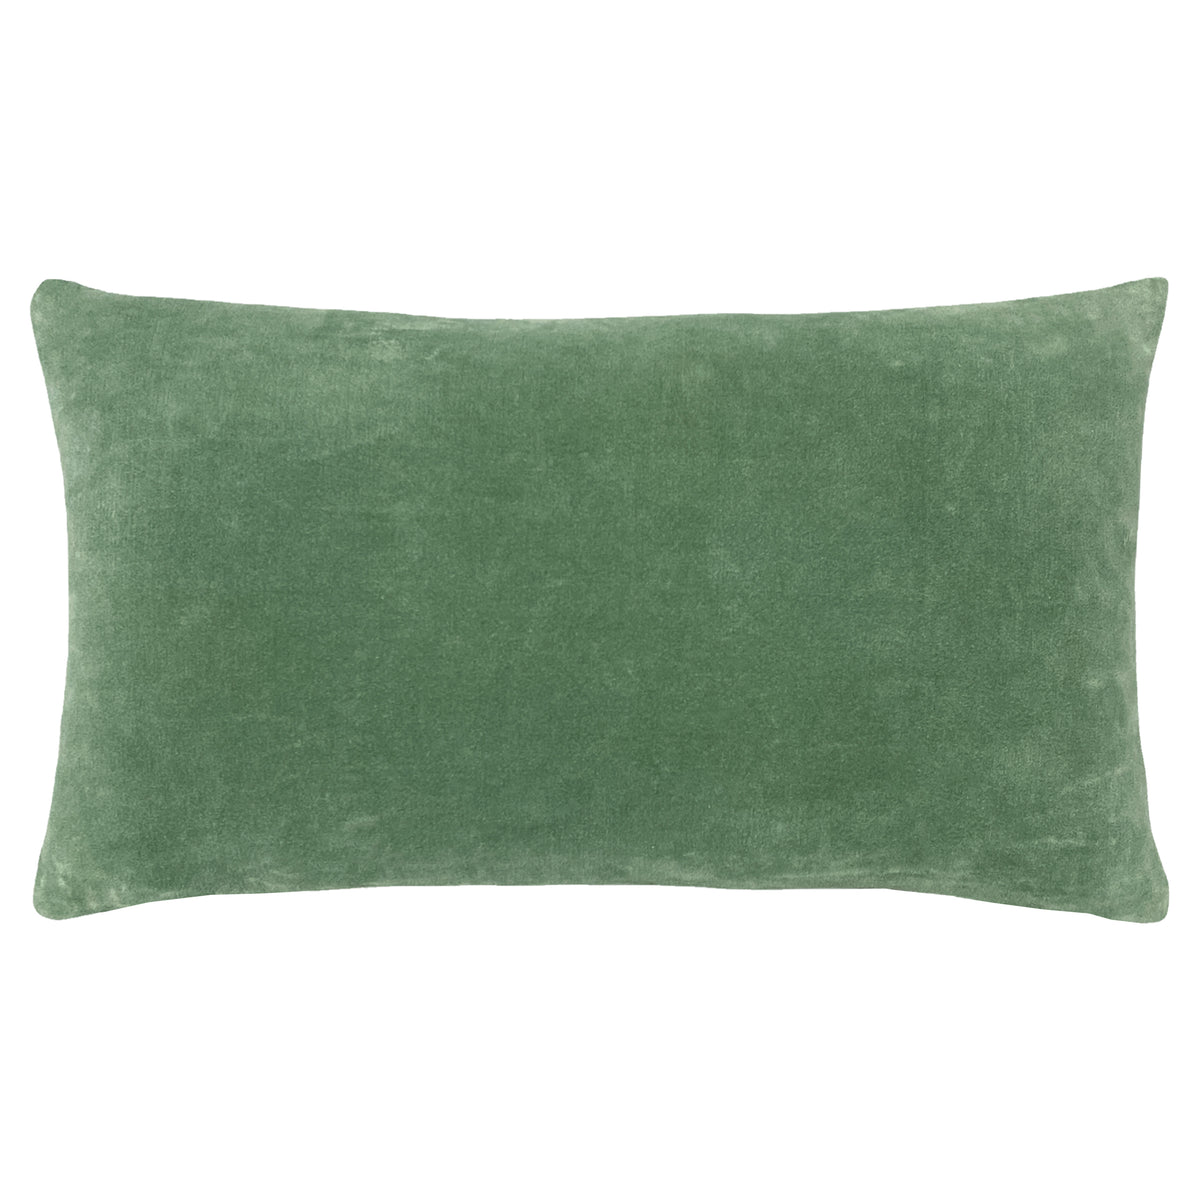 Mangara 60cm Cotton Velvet Bolster Cushion